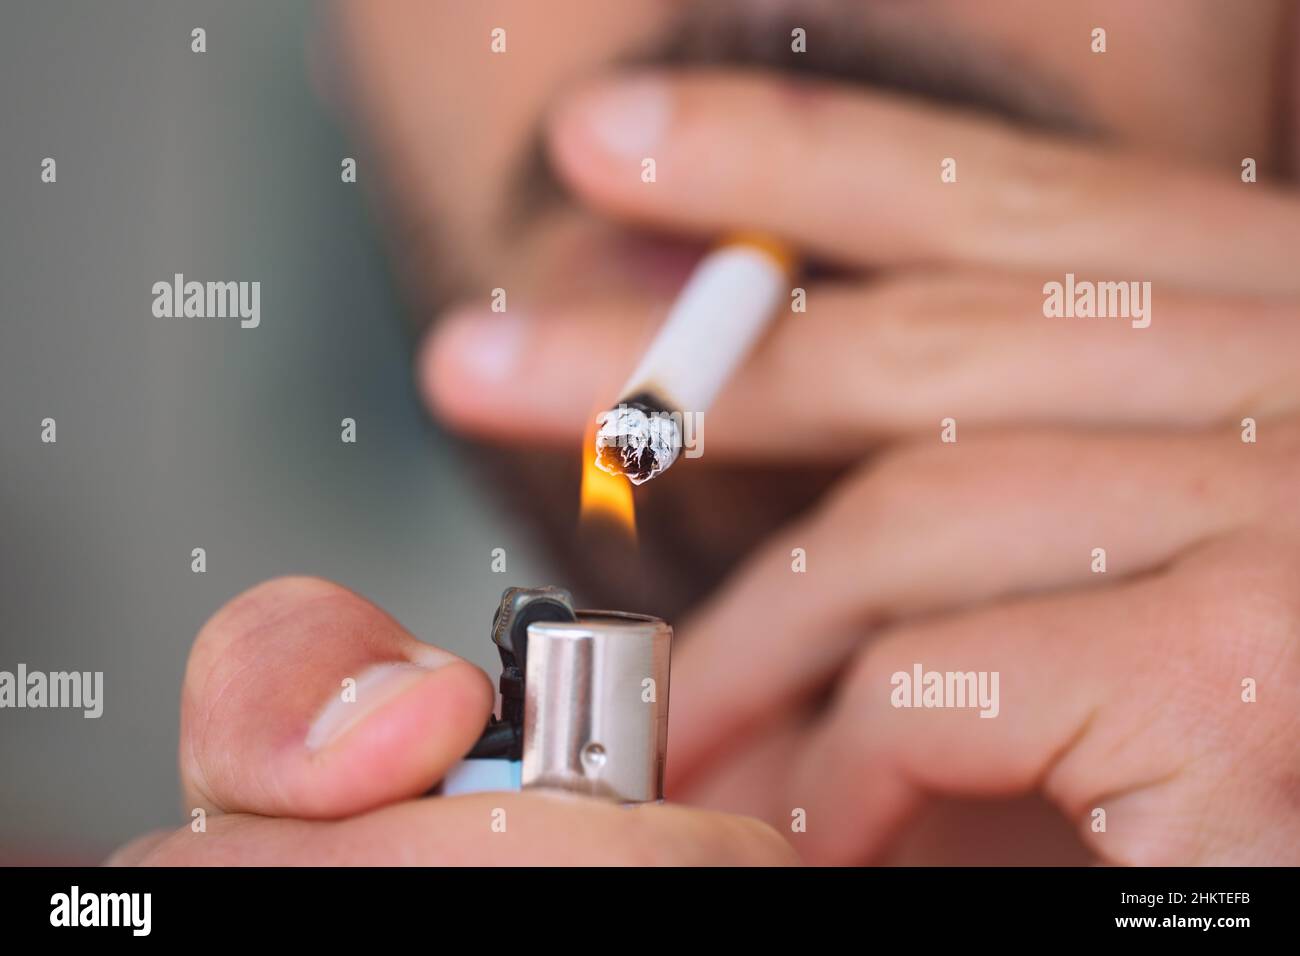 Nahaufnahme eines jungen Mannes, der Zigarette anzündet und raucht. Rauchen sucht und schlechte Gewohnheit Konzept Stockfoto